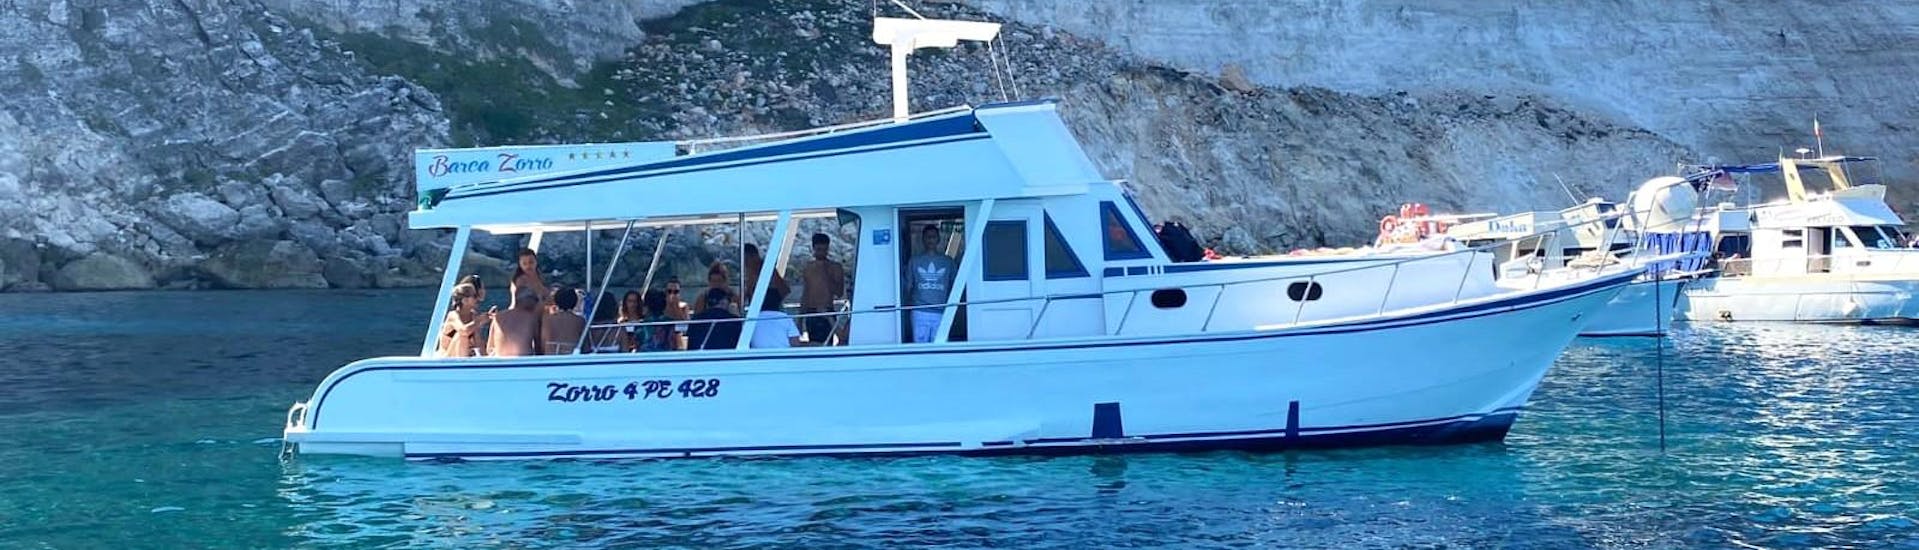 Foto della barca di Gita in Barca Zorro Lampedusa usata per le gite in barca.